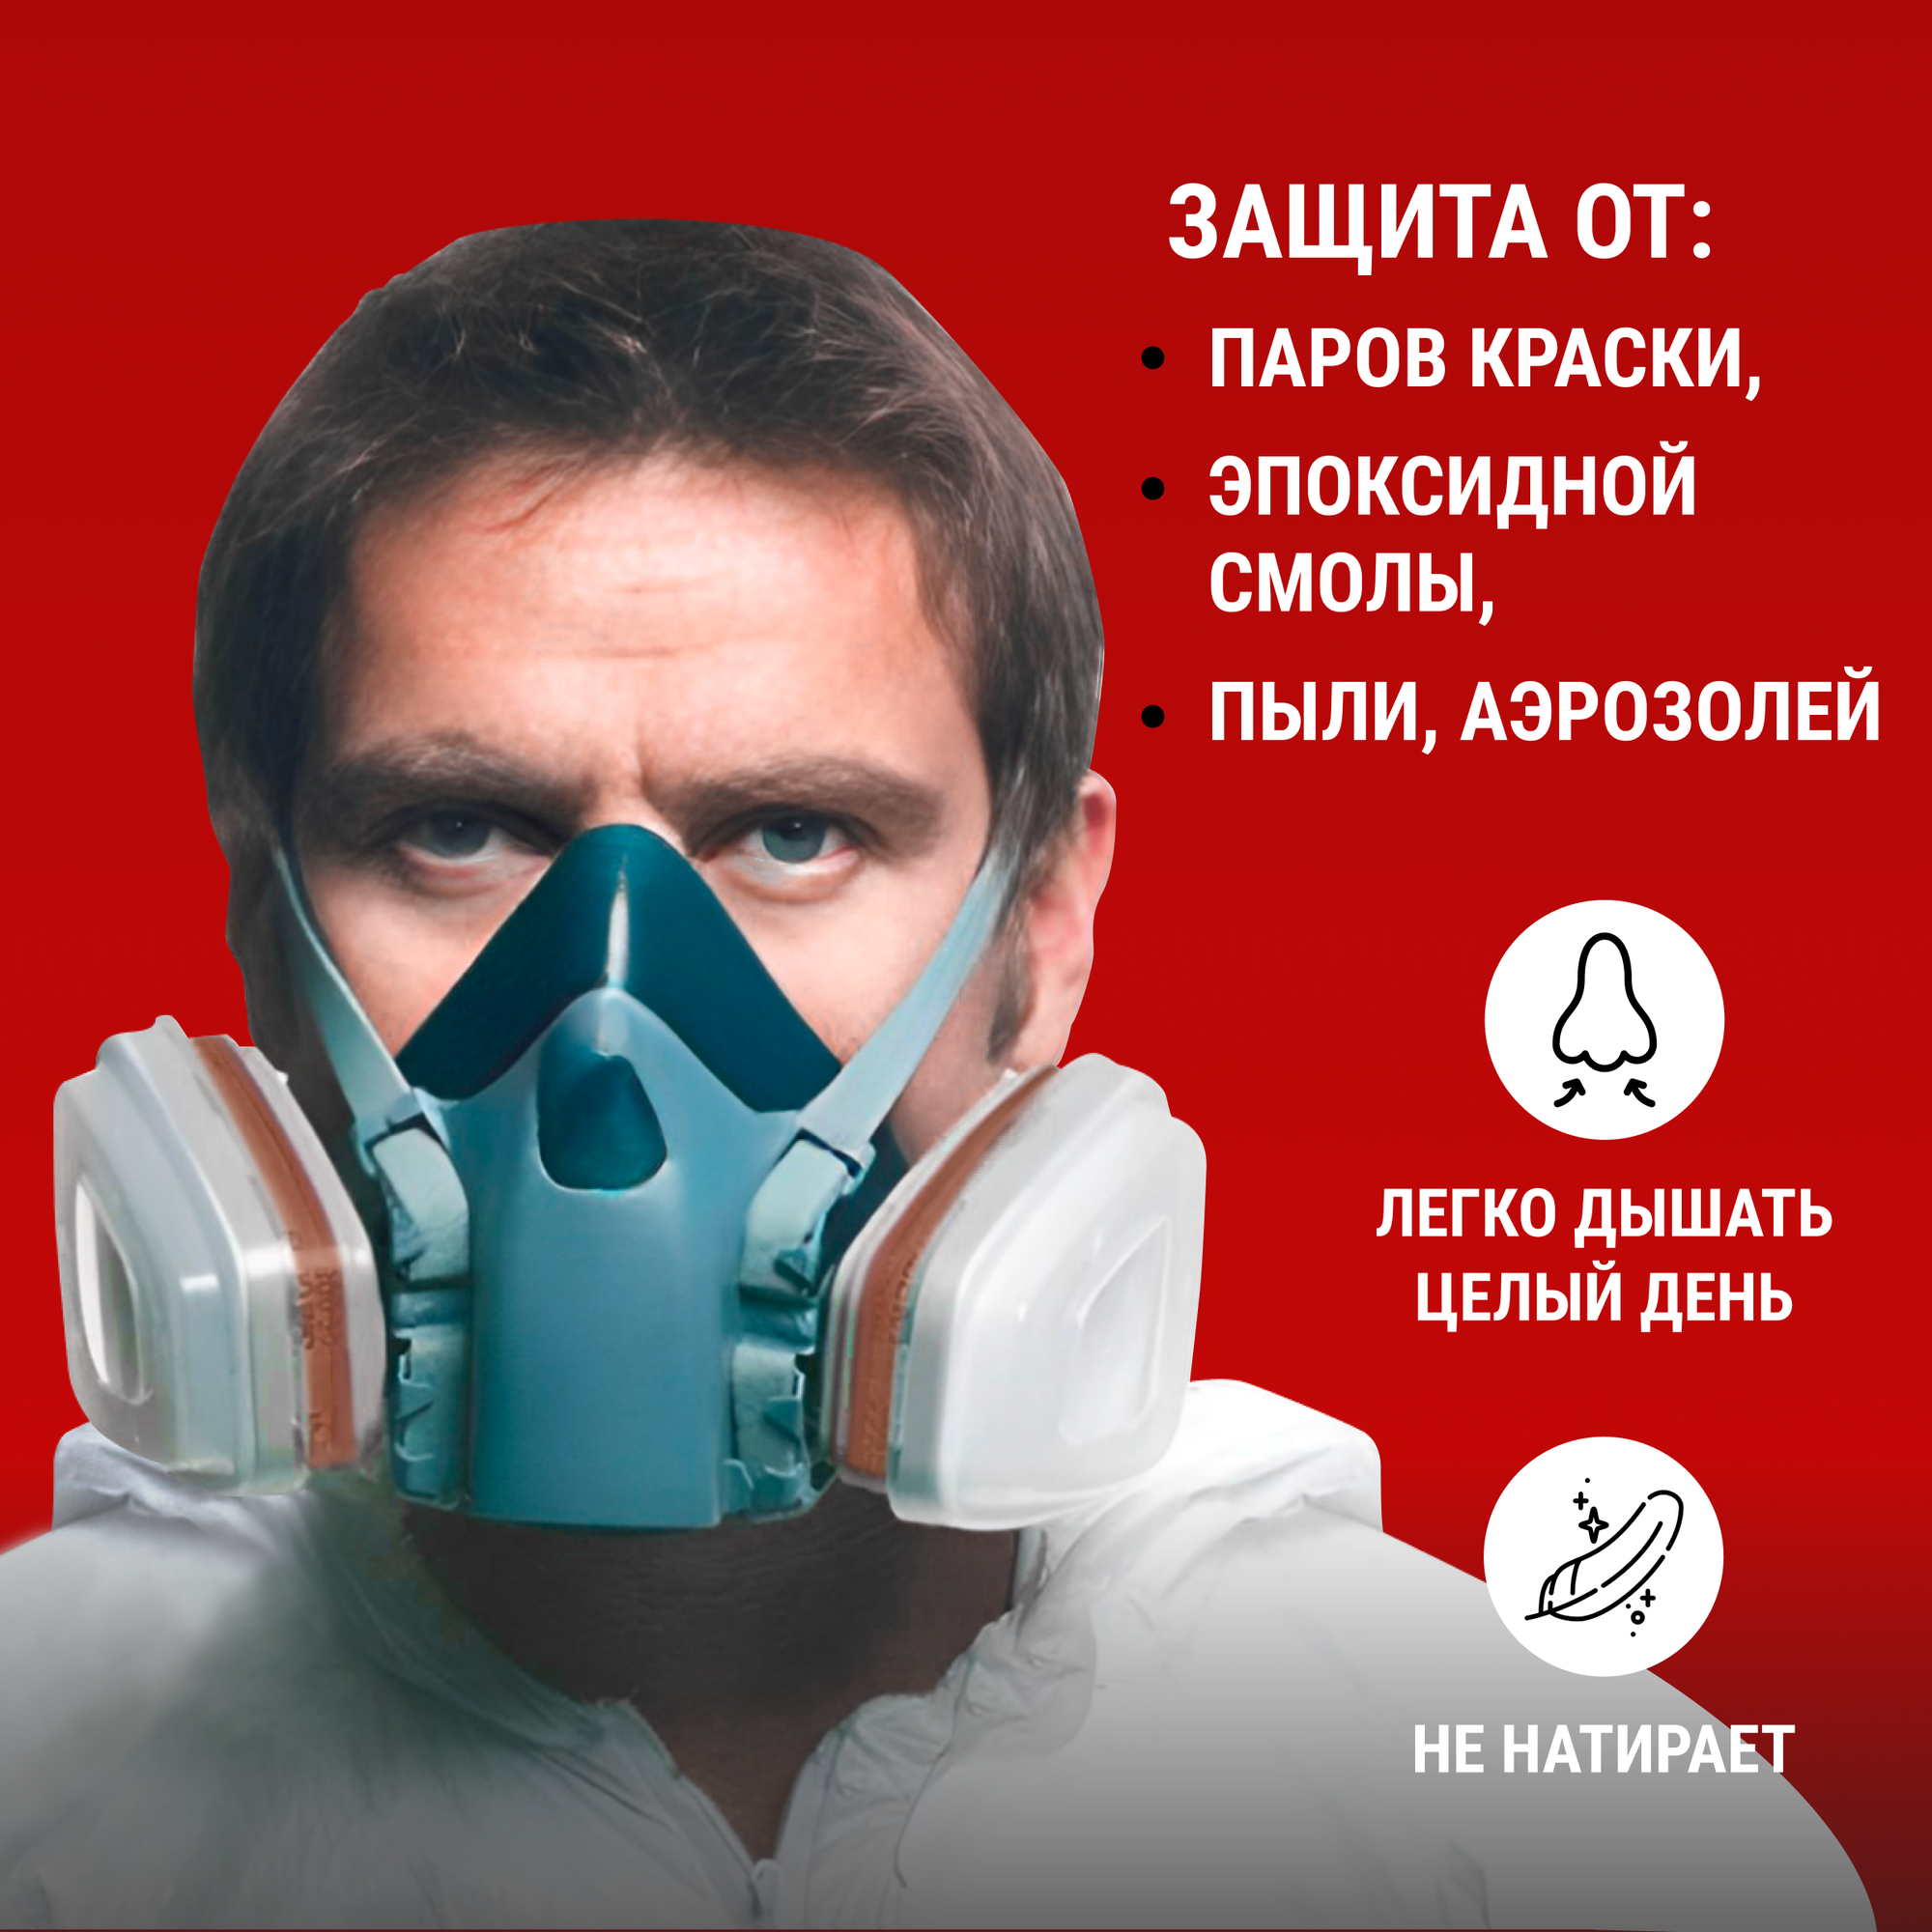 Профессиональный респиратор противогаз маска защитная 7502 замена 3М с угольным фильтром распиратор от краски пыли аллергии